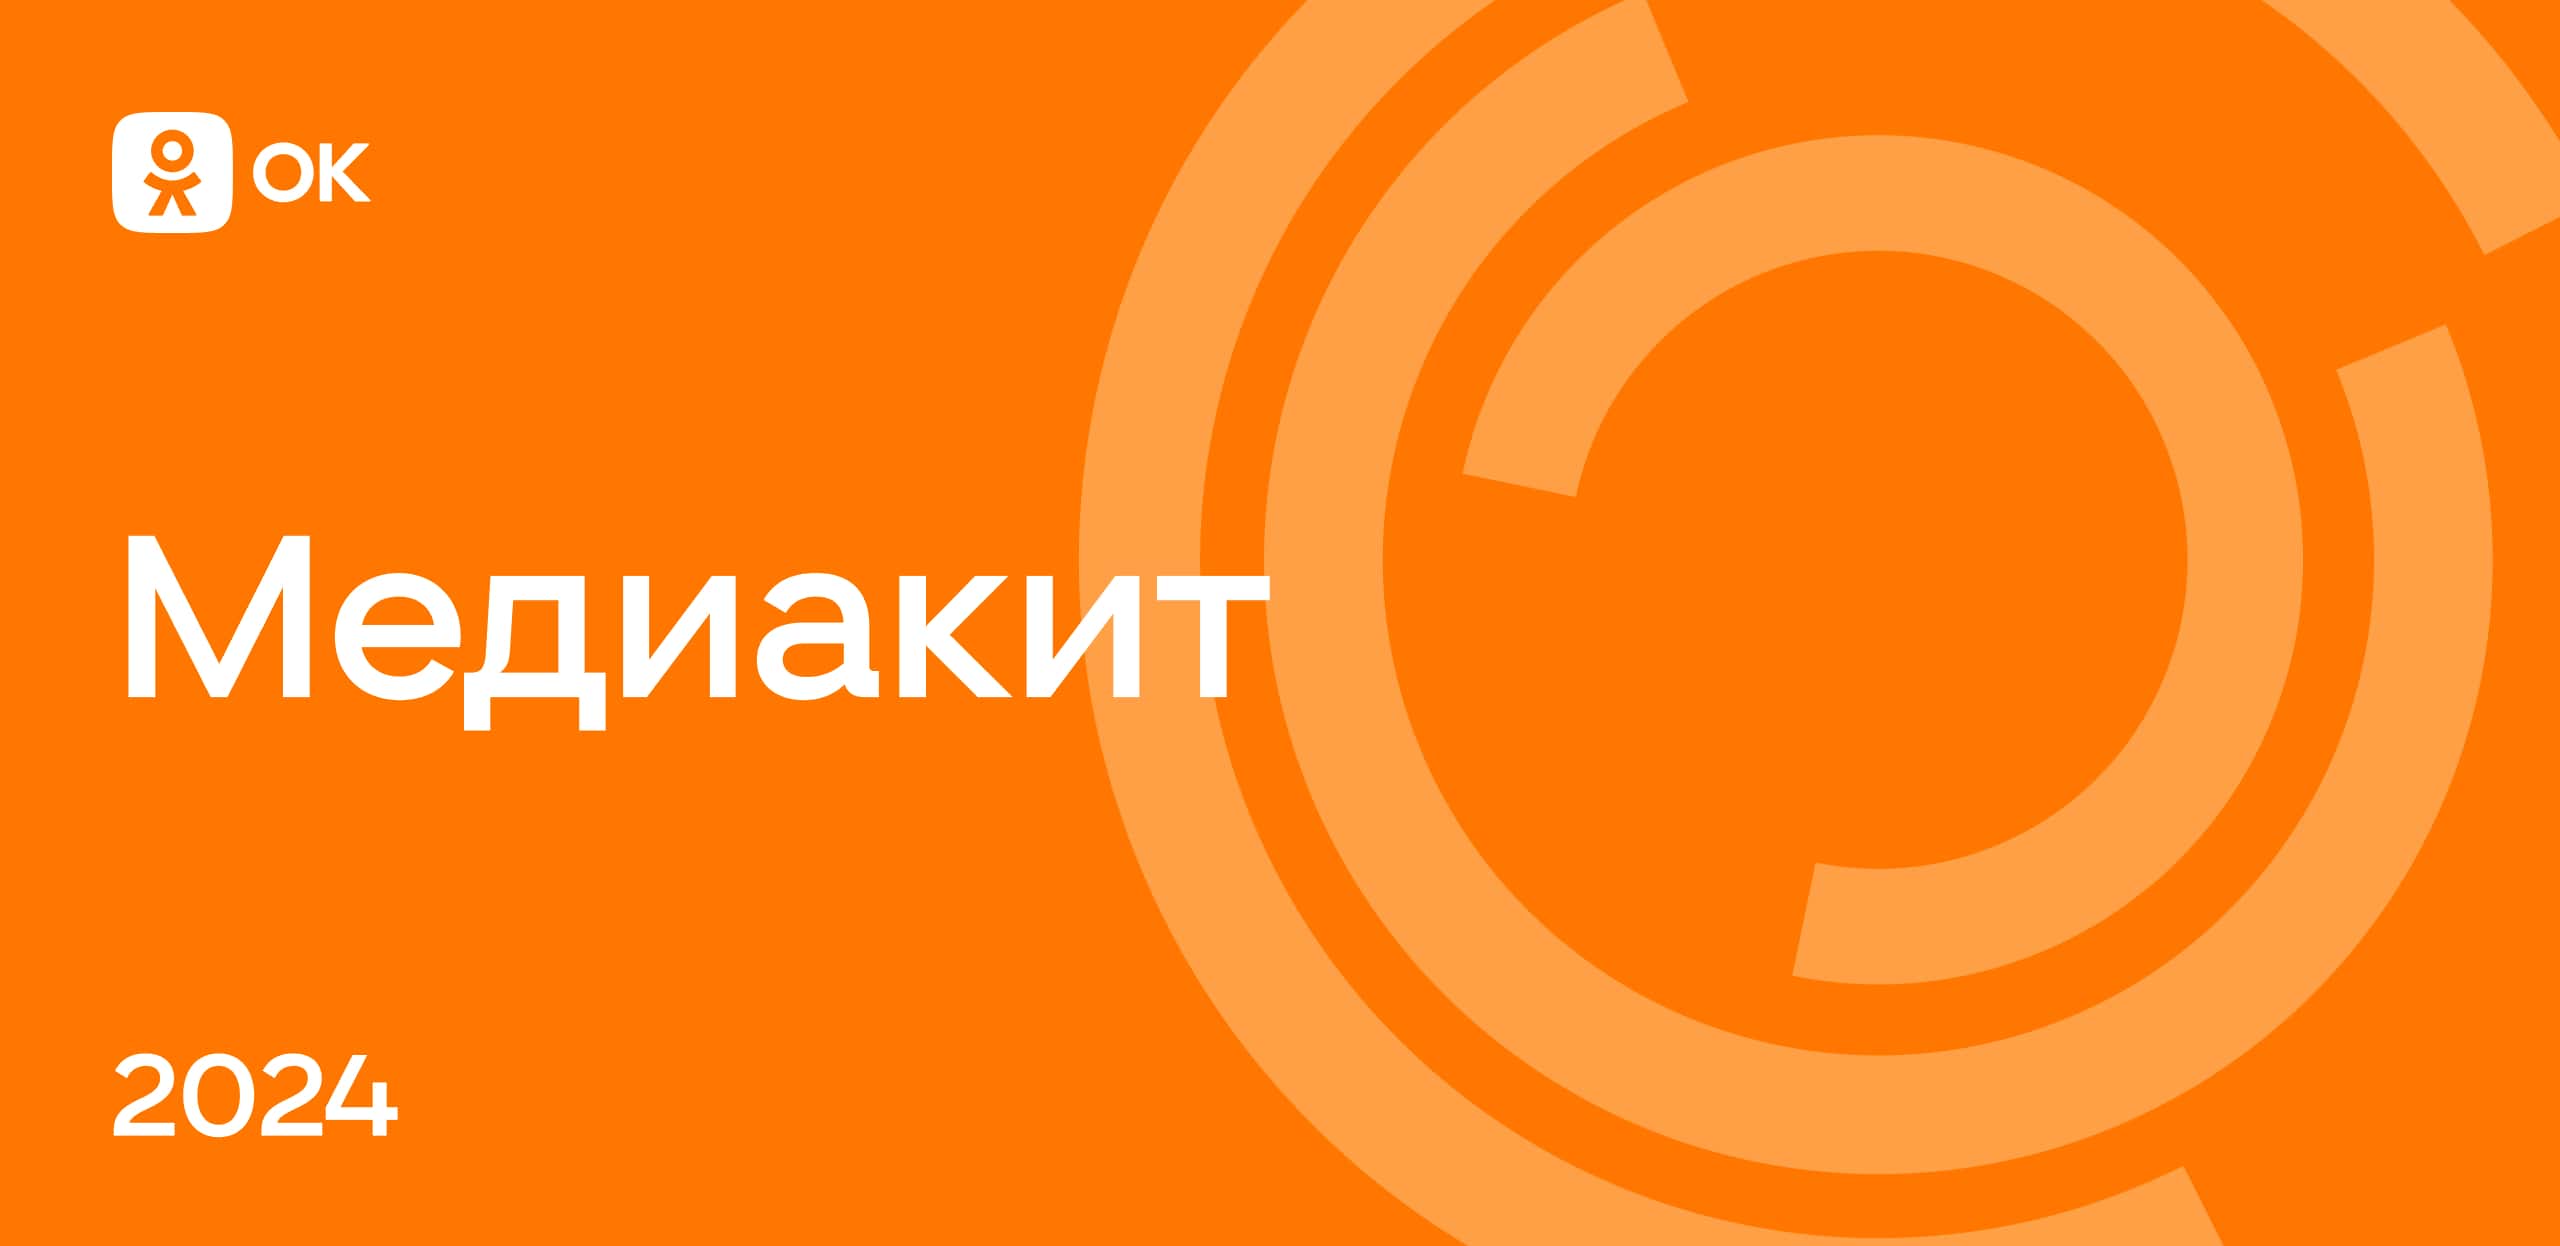 Как поставить статус в Одноклассниках? | FAQ about OK